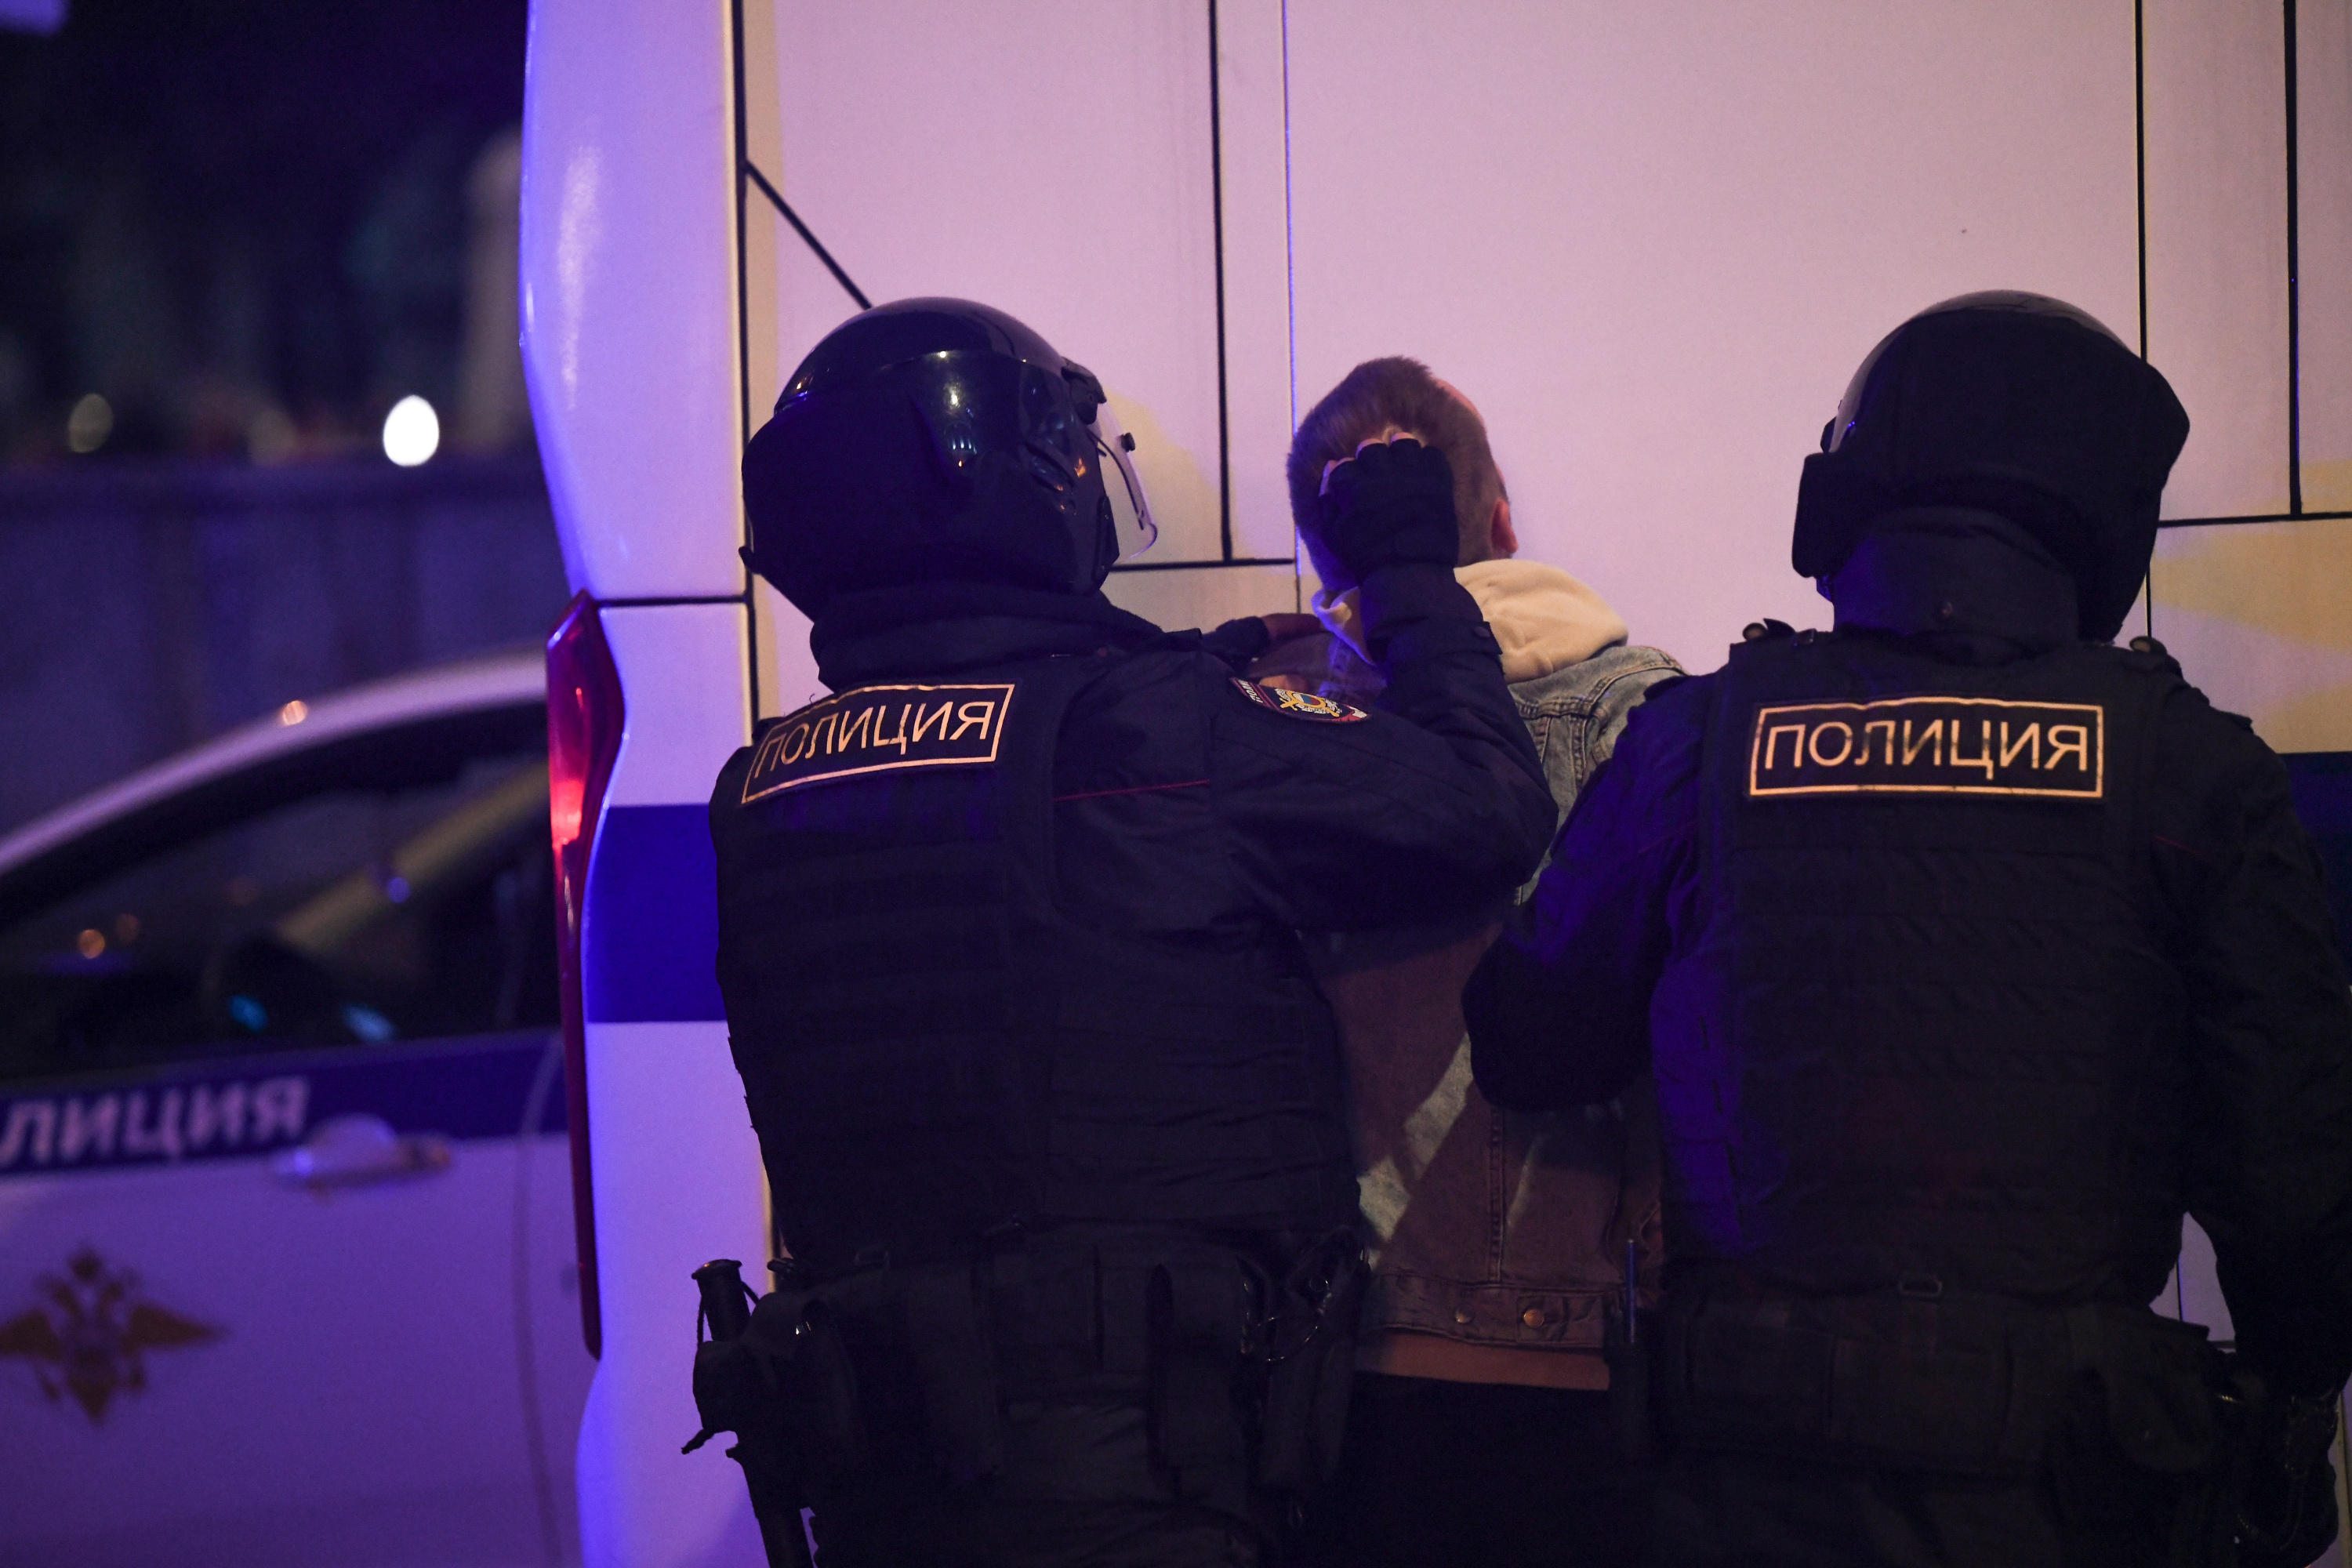 ​Полиция Краснодара опубликовала видео допроса проституток нетрадиционной ориентации | Югополис